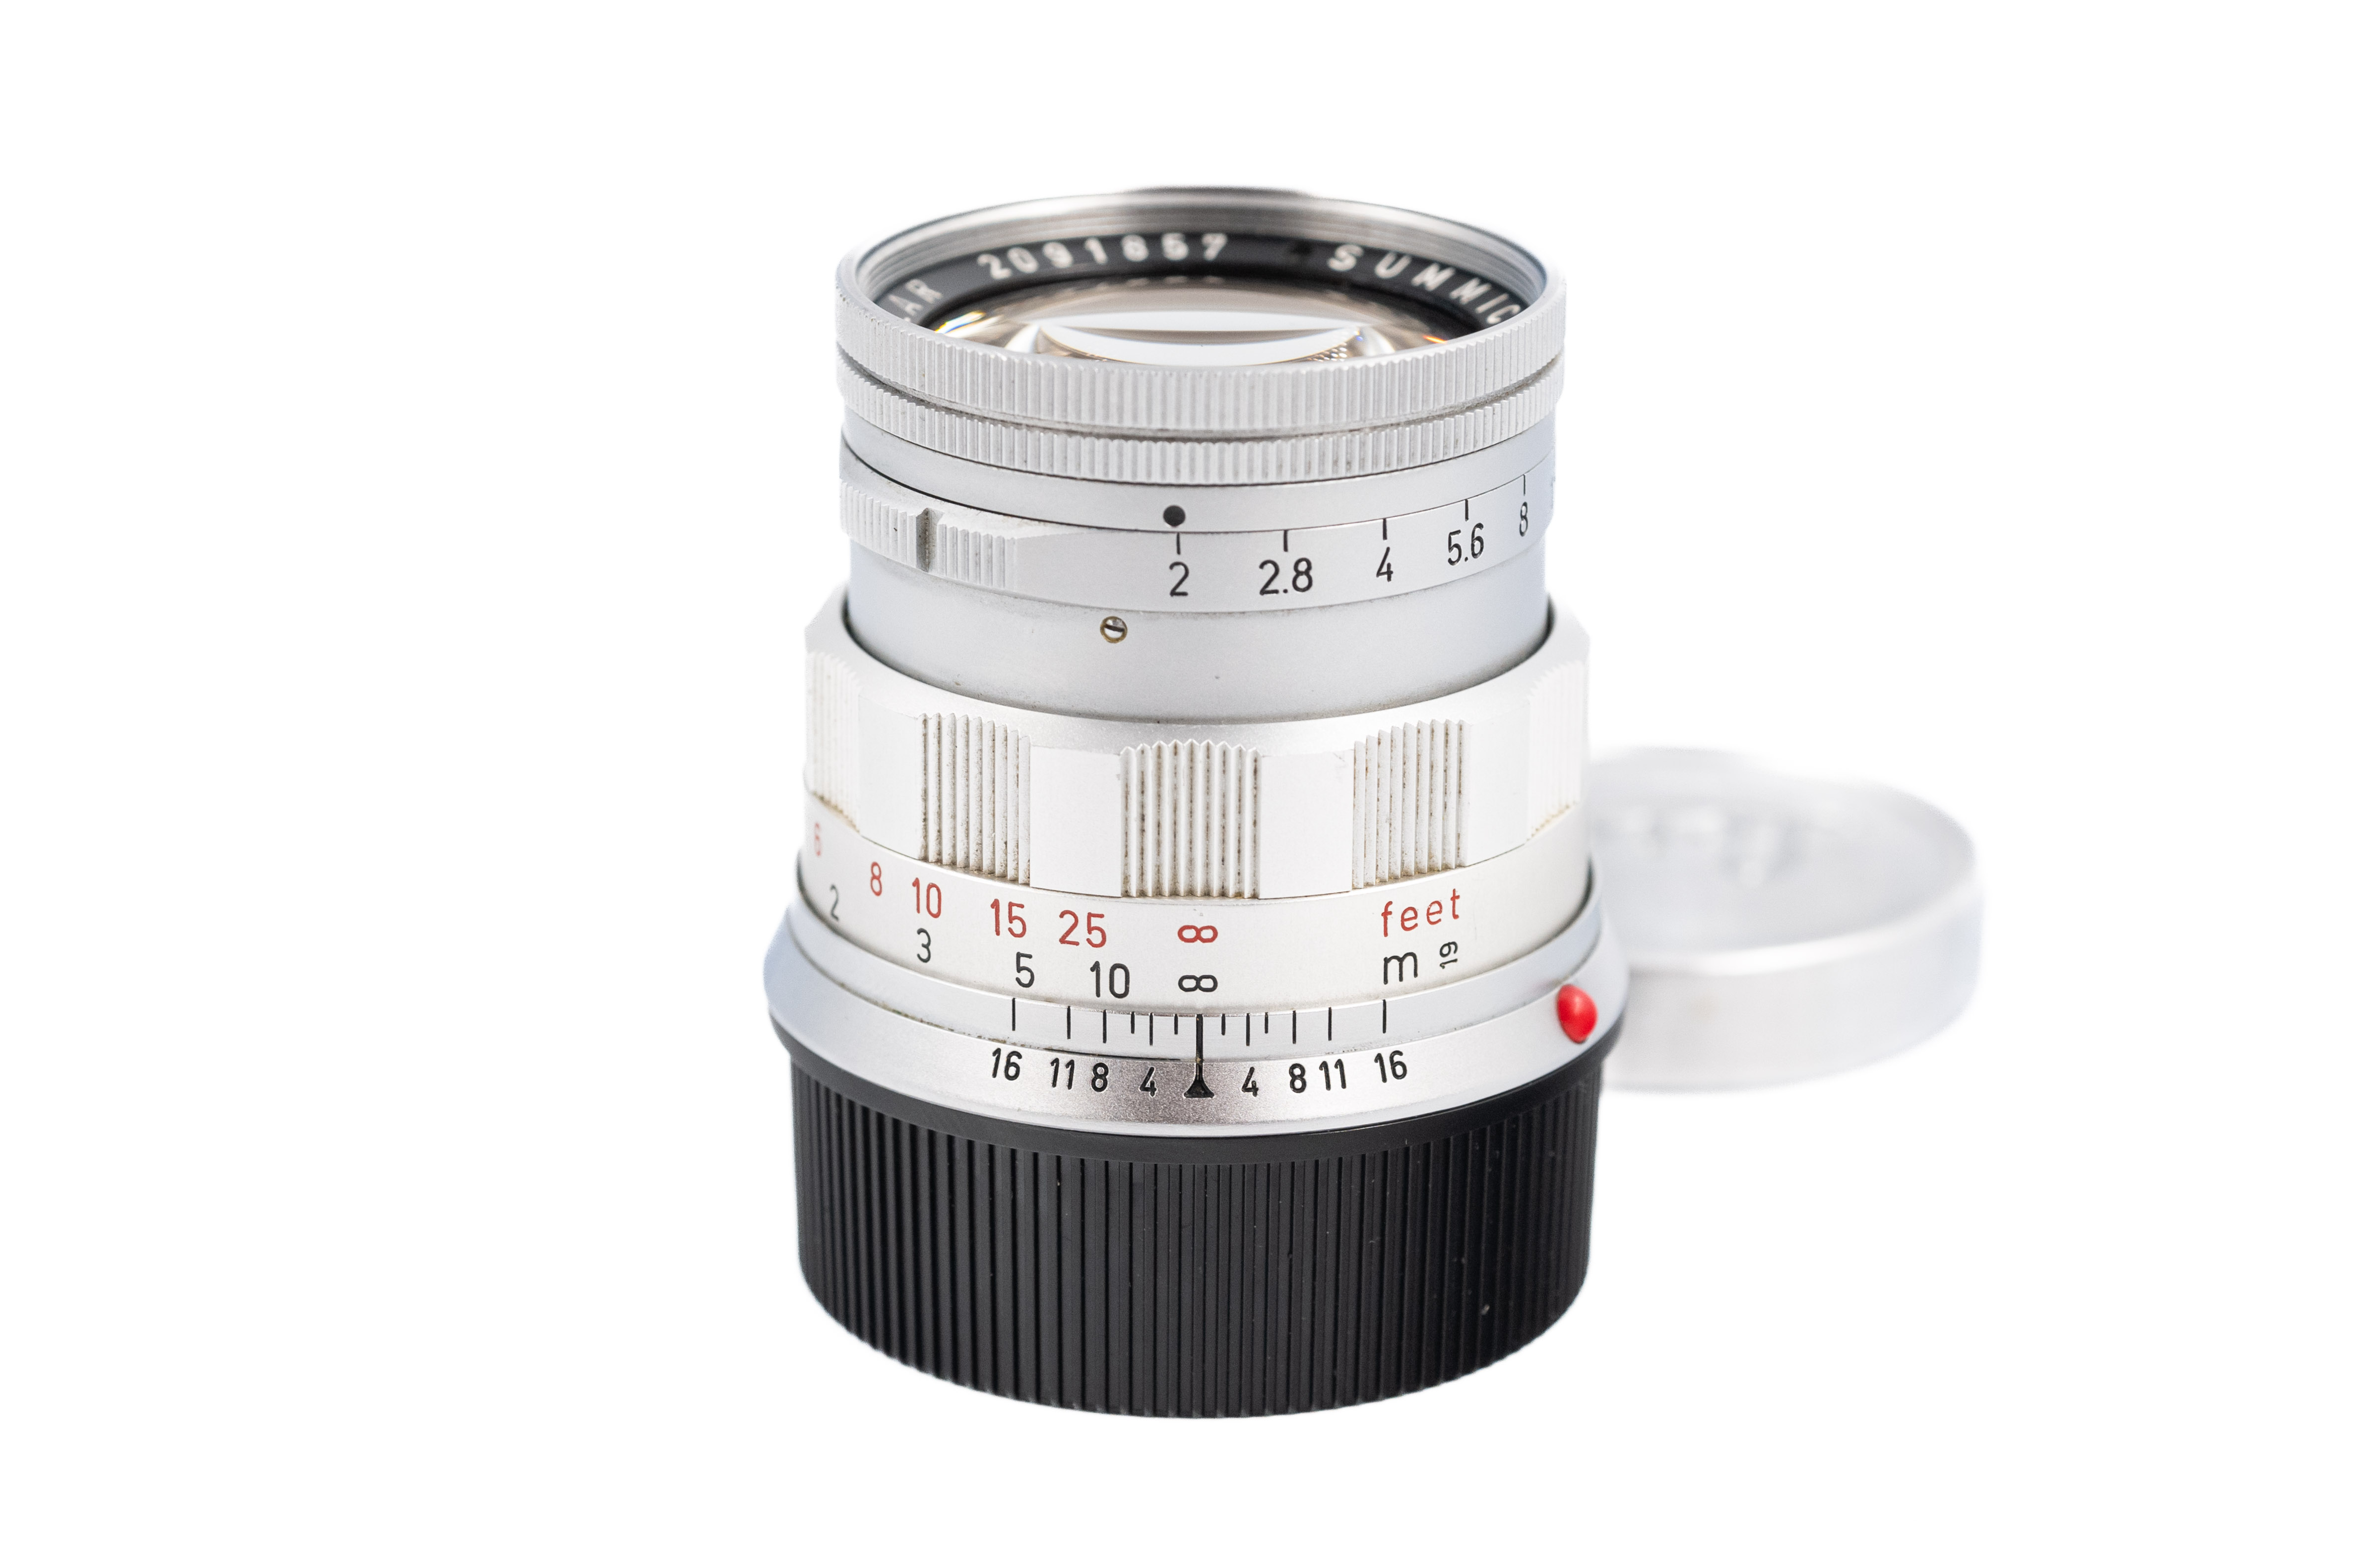 Leica Summicron-M 50mm f/2 Rigid 11018